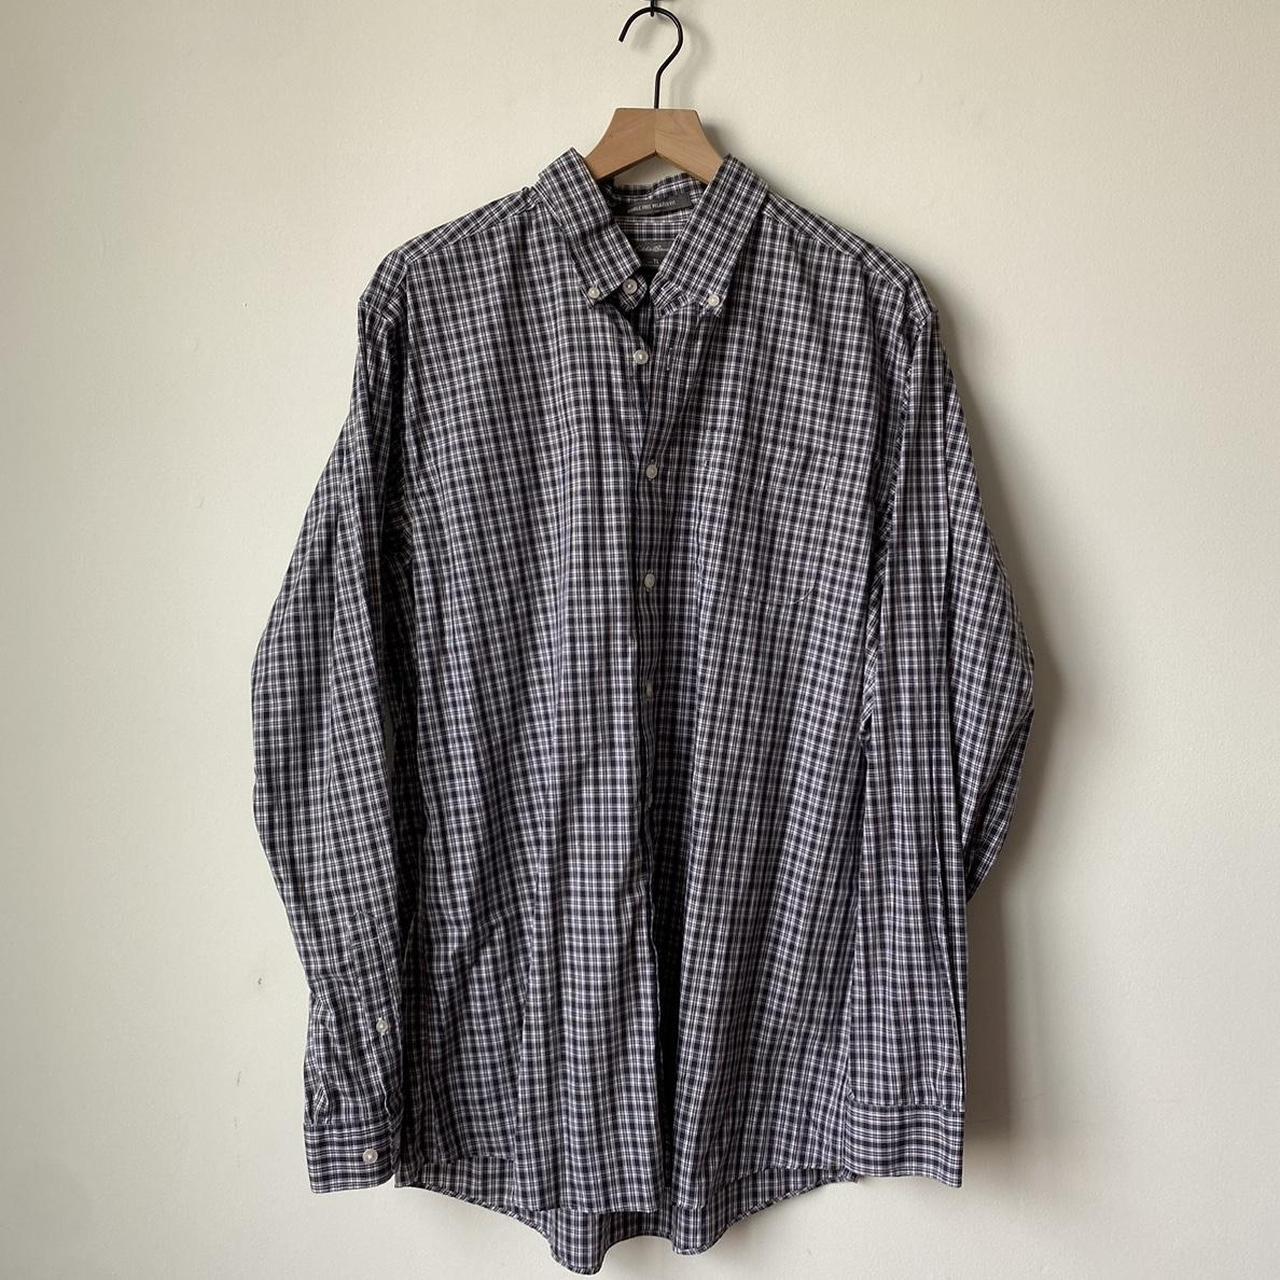 Vintage Eddie Bauer Flannel Shirt Size... - Depop